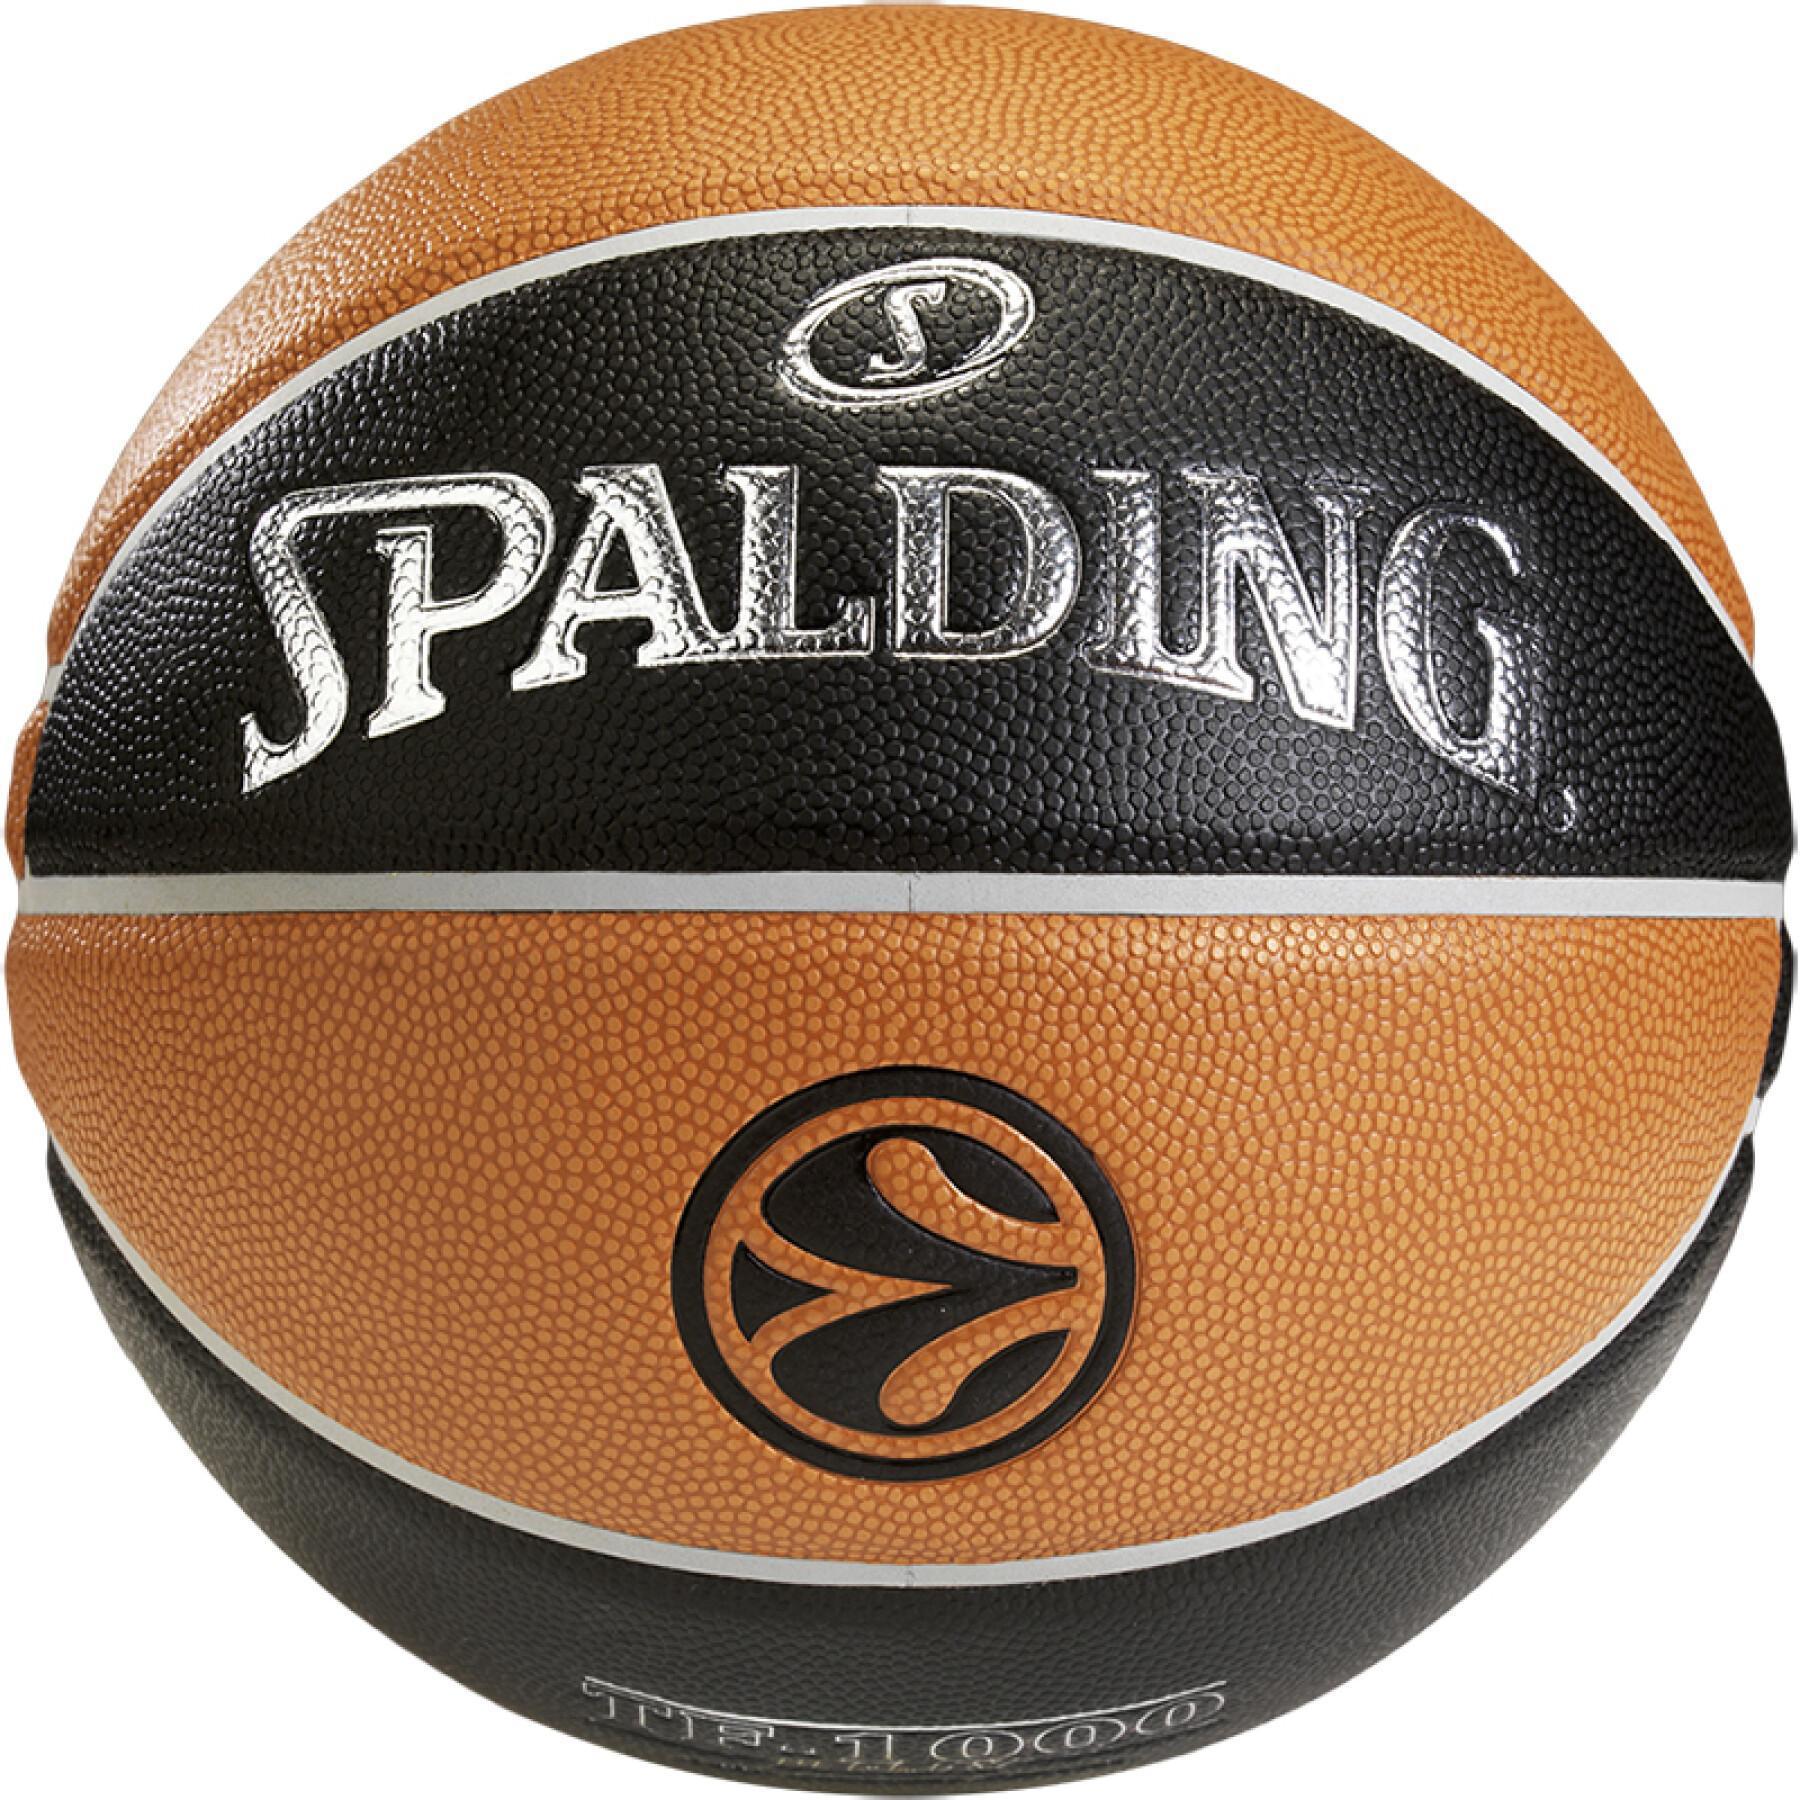 Ballon Spalding Euroleague TF 1000 Legacy